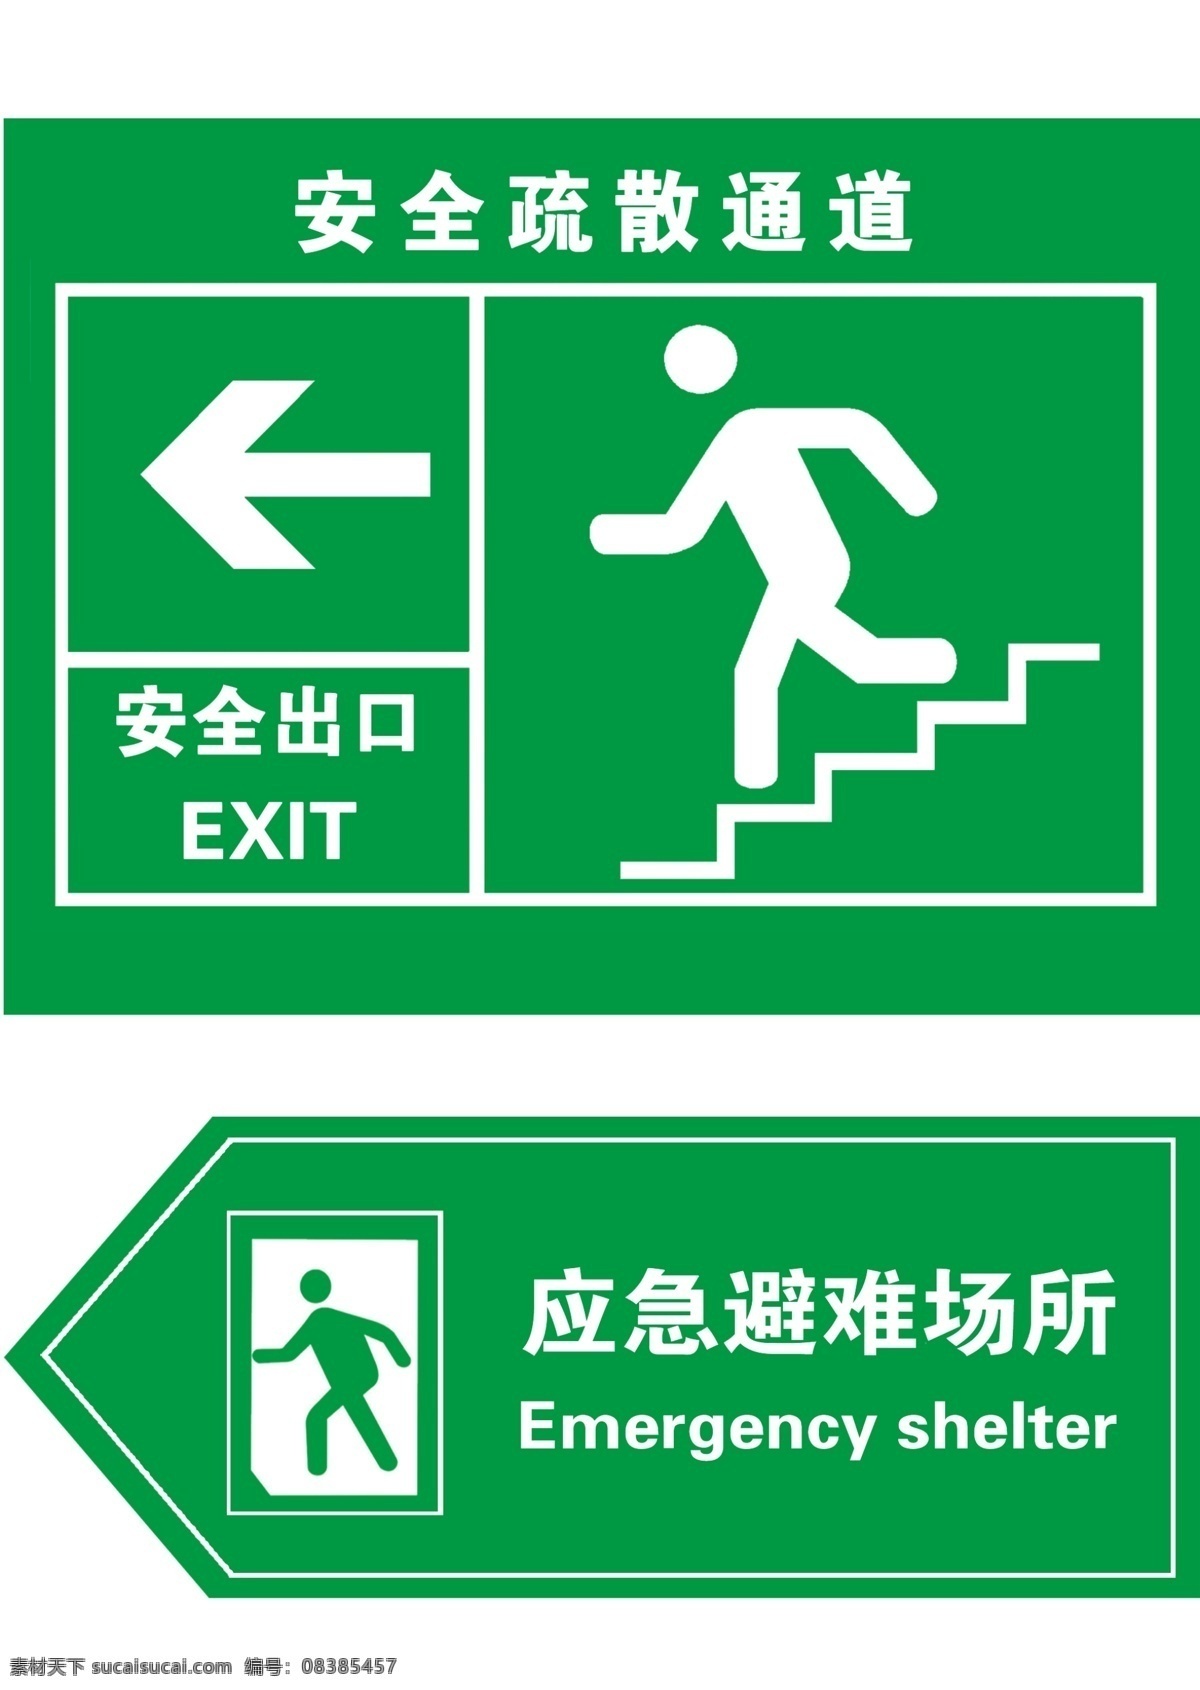 安全出口 安全 出口 指示牌 安全疏散通道 应急避难场所 箭头 楼梯 公共标识标志 标识标志图标 标志设计 广告设计模板 源文件